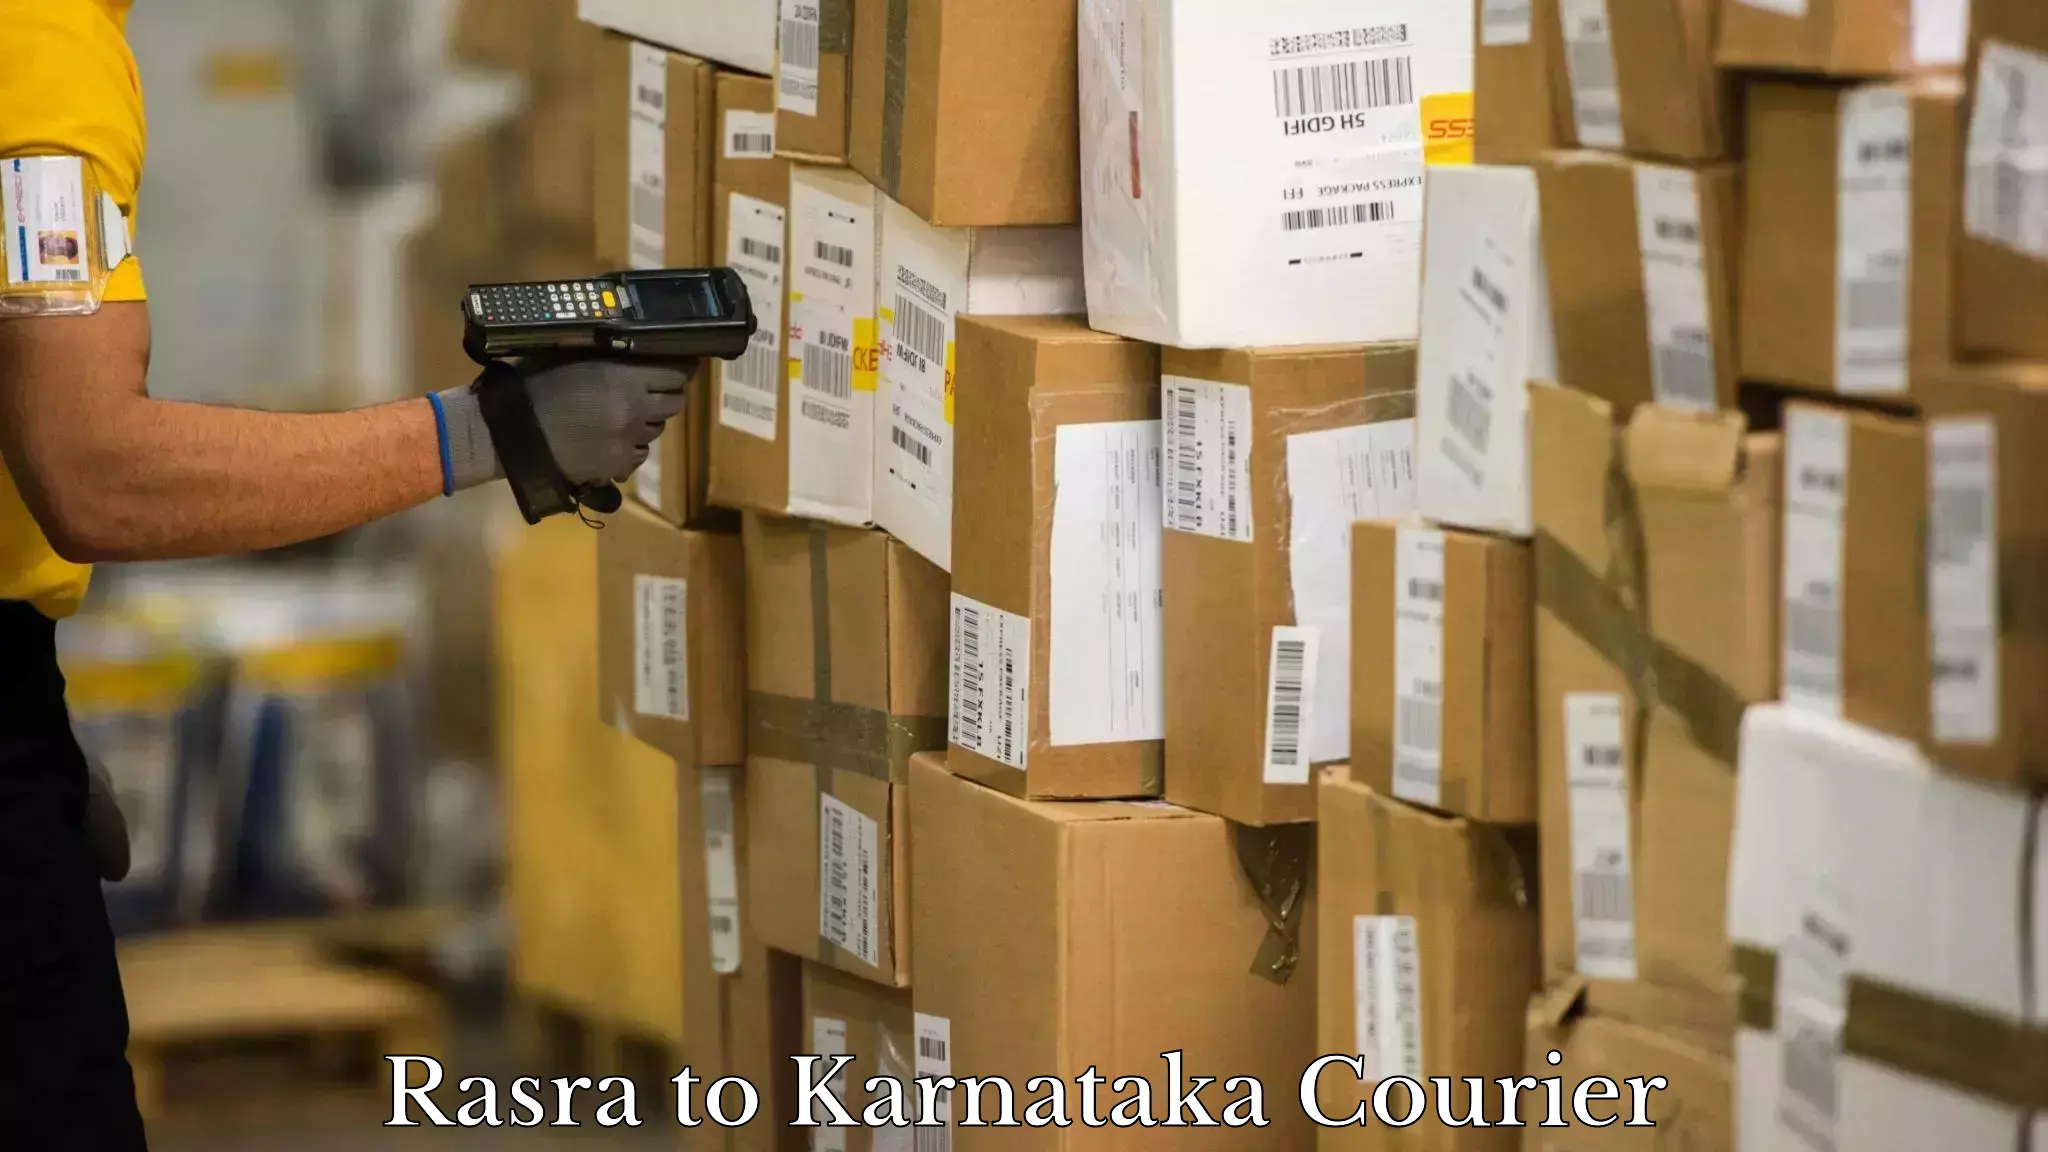 Tracking updates Rasra to Karnataka